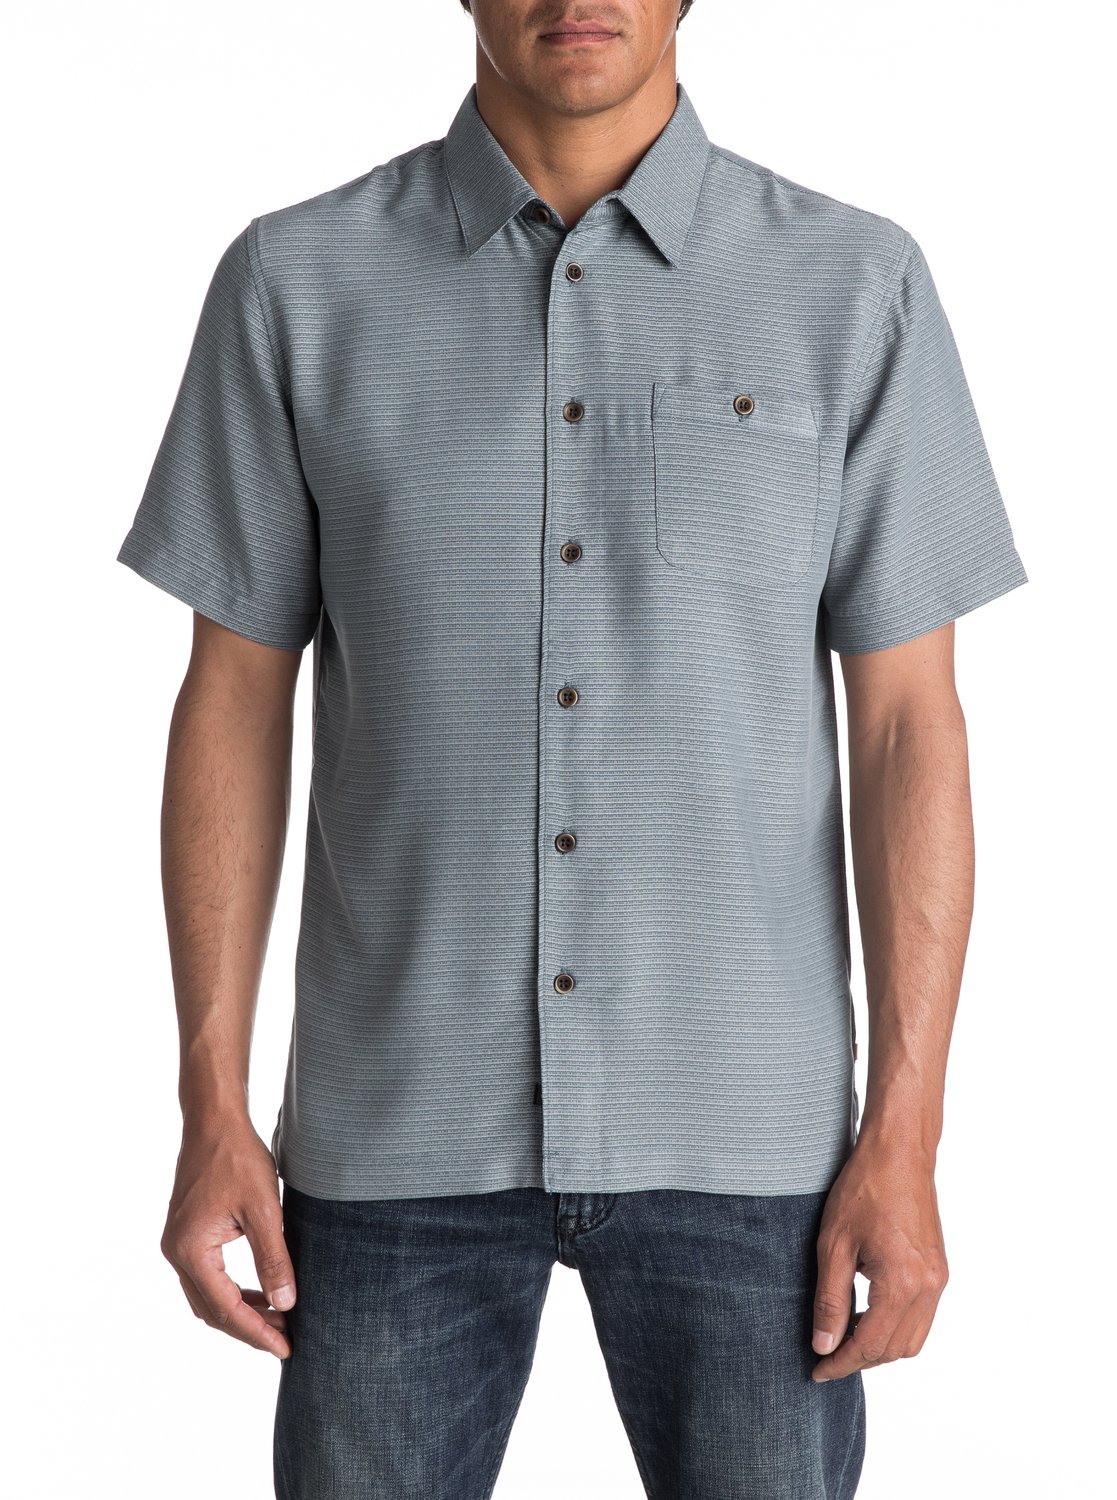 Quiksilver™ Waterman Aberdeen Short Sleeve Shirt AQMWT03255 | eBay